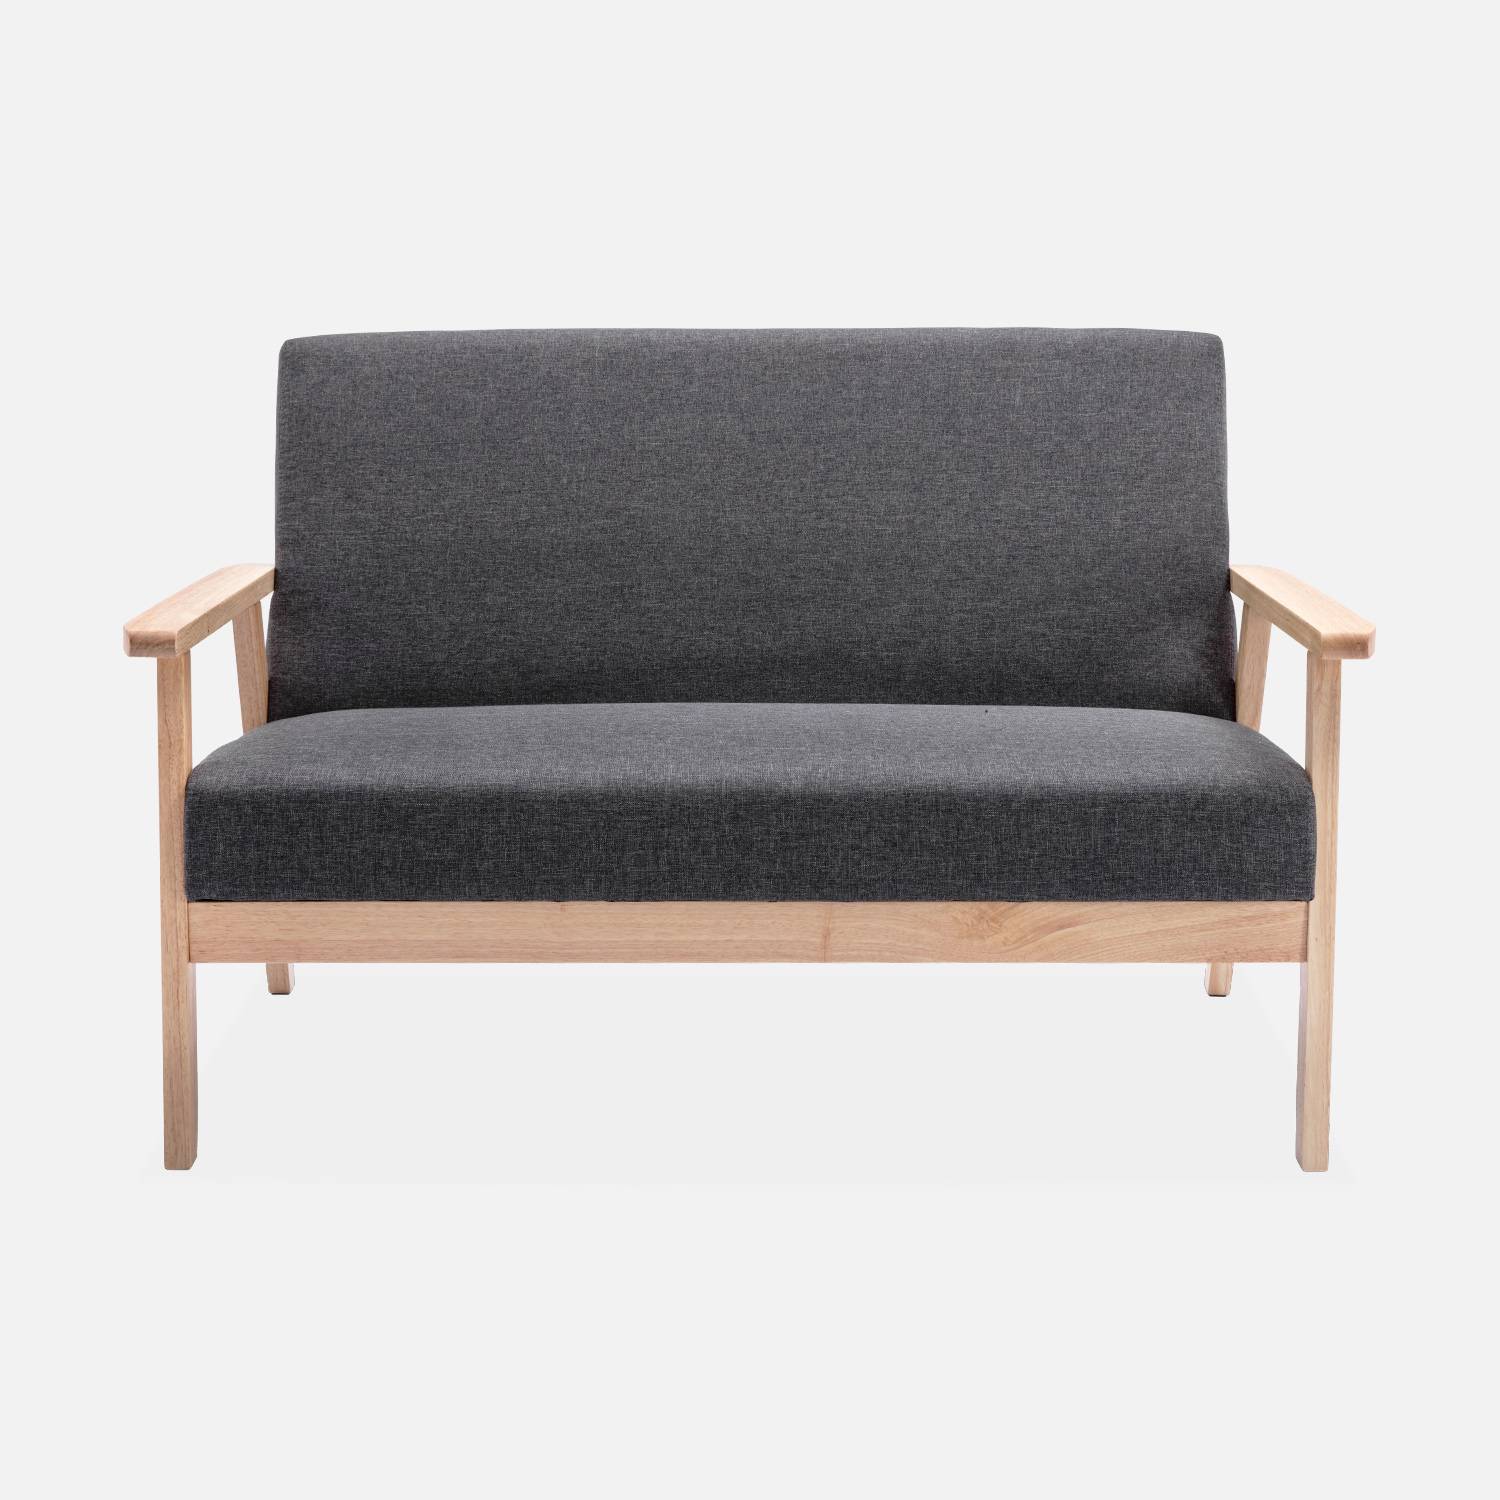 Panca per divano in legno e tessuto grigio scuro, Isak, L 114 x P 69,5 x H 73cm,sweeek,Photo3